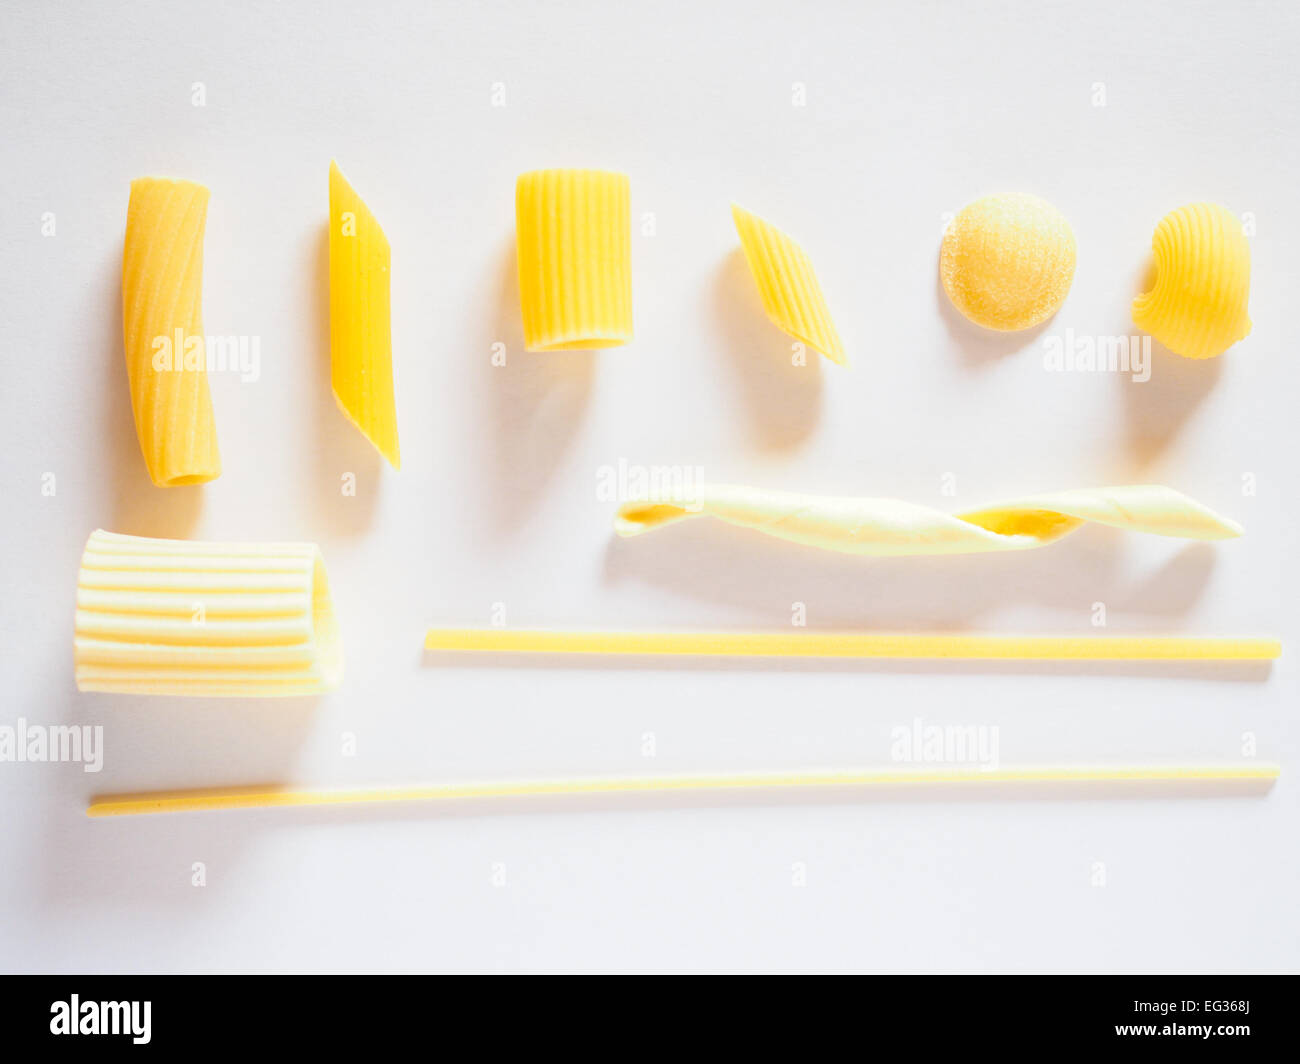 Types mixtes de pâtes italiennes notamment penne, macaroni, mezze penne, orecchiette, lumache, paccheri, spaghetti et trenette Banque D'Images